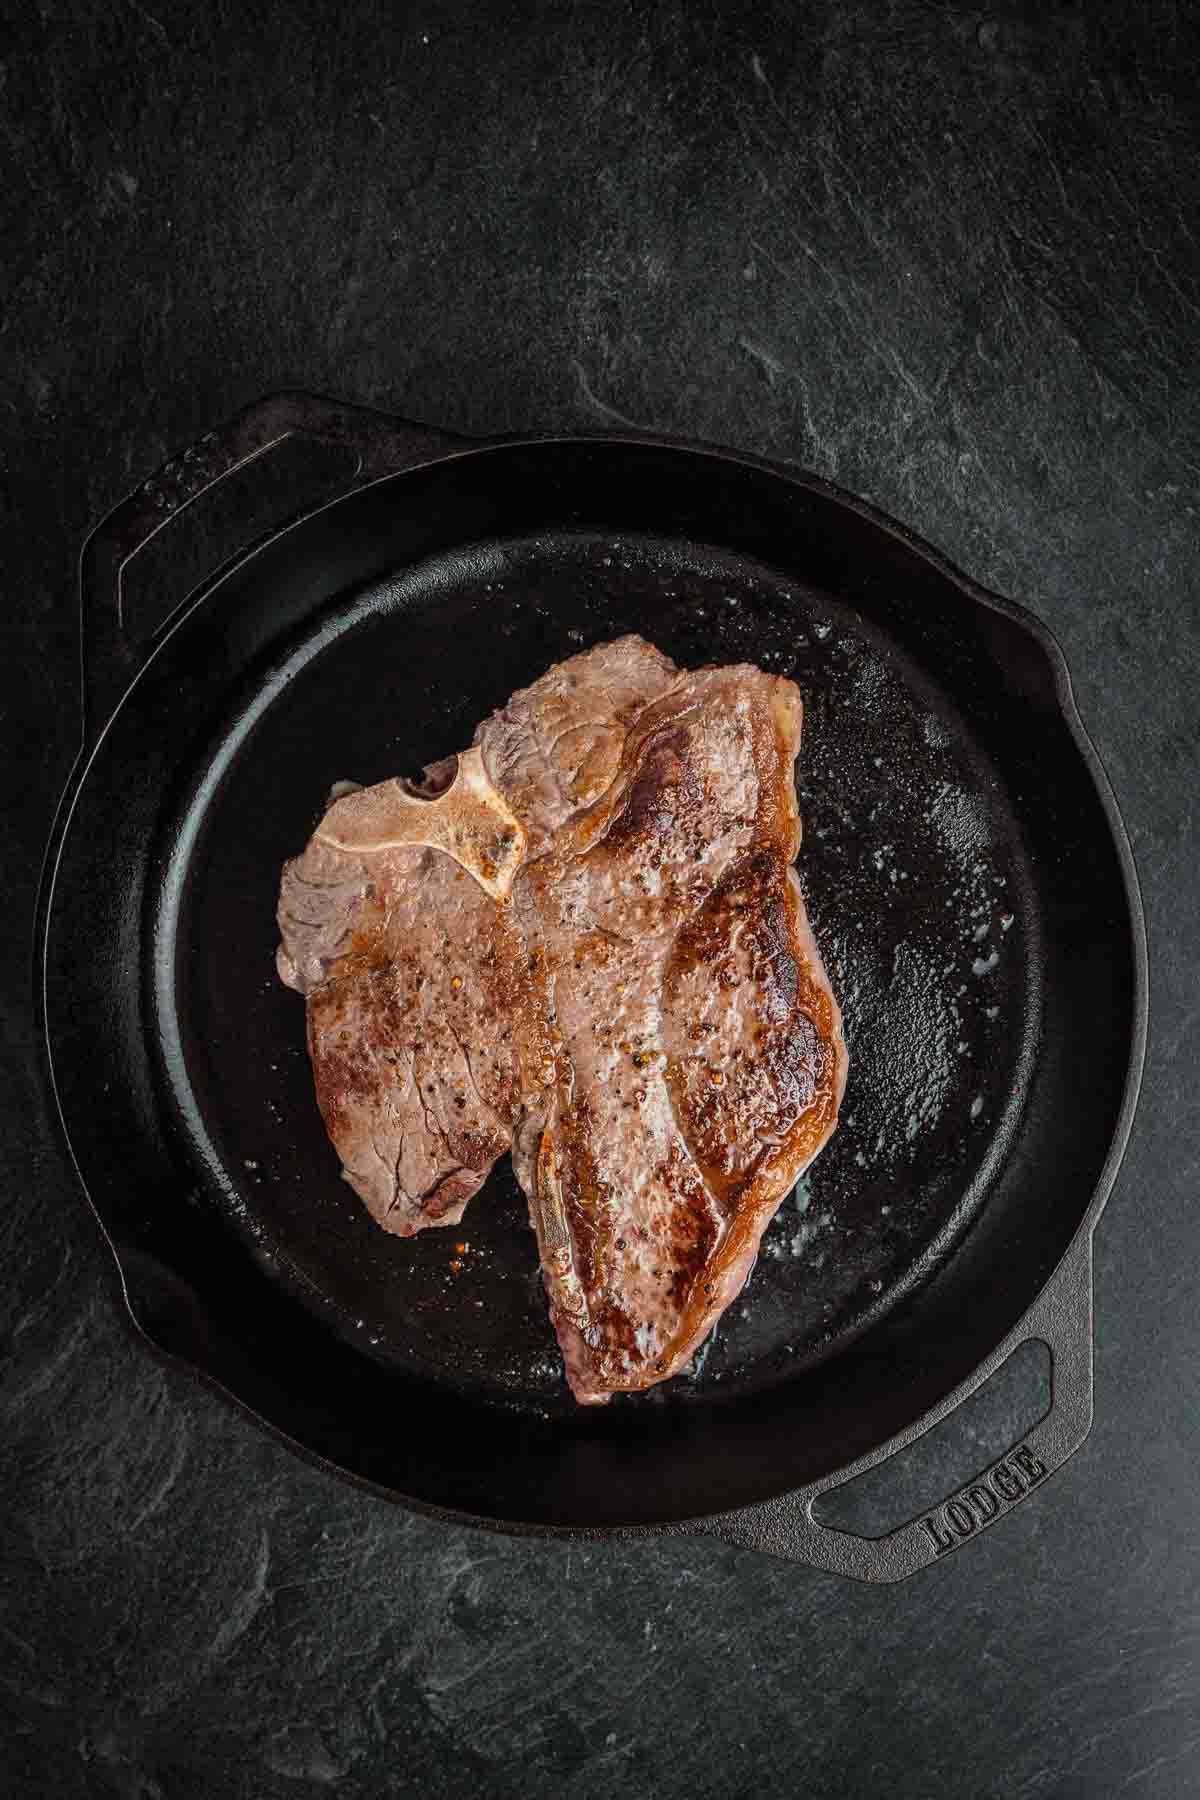 Porterhouse steak, flipped in cast iron to show sear.